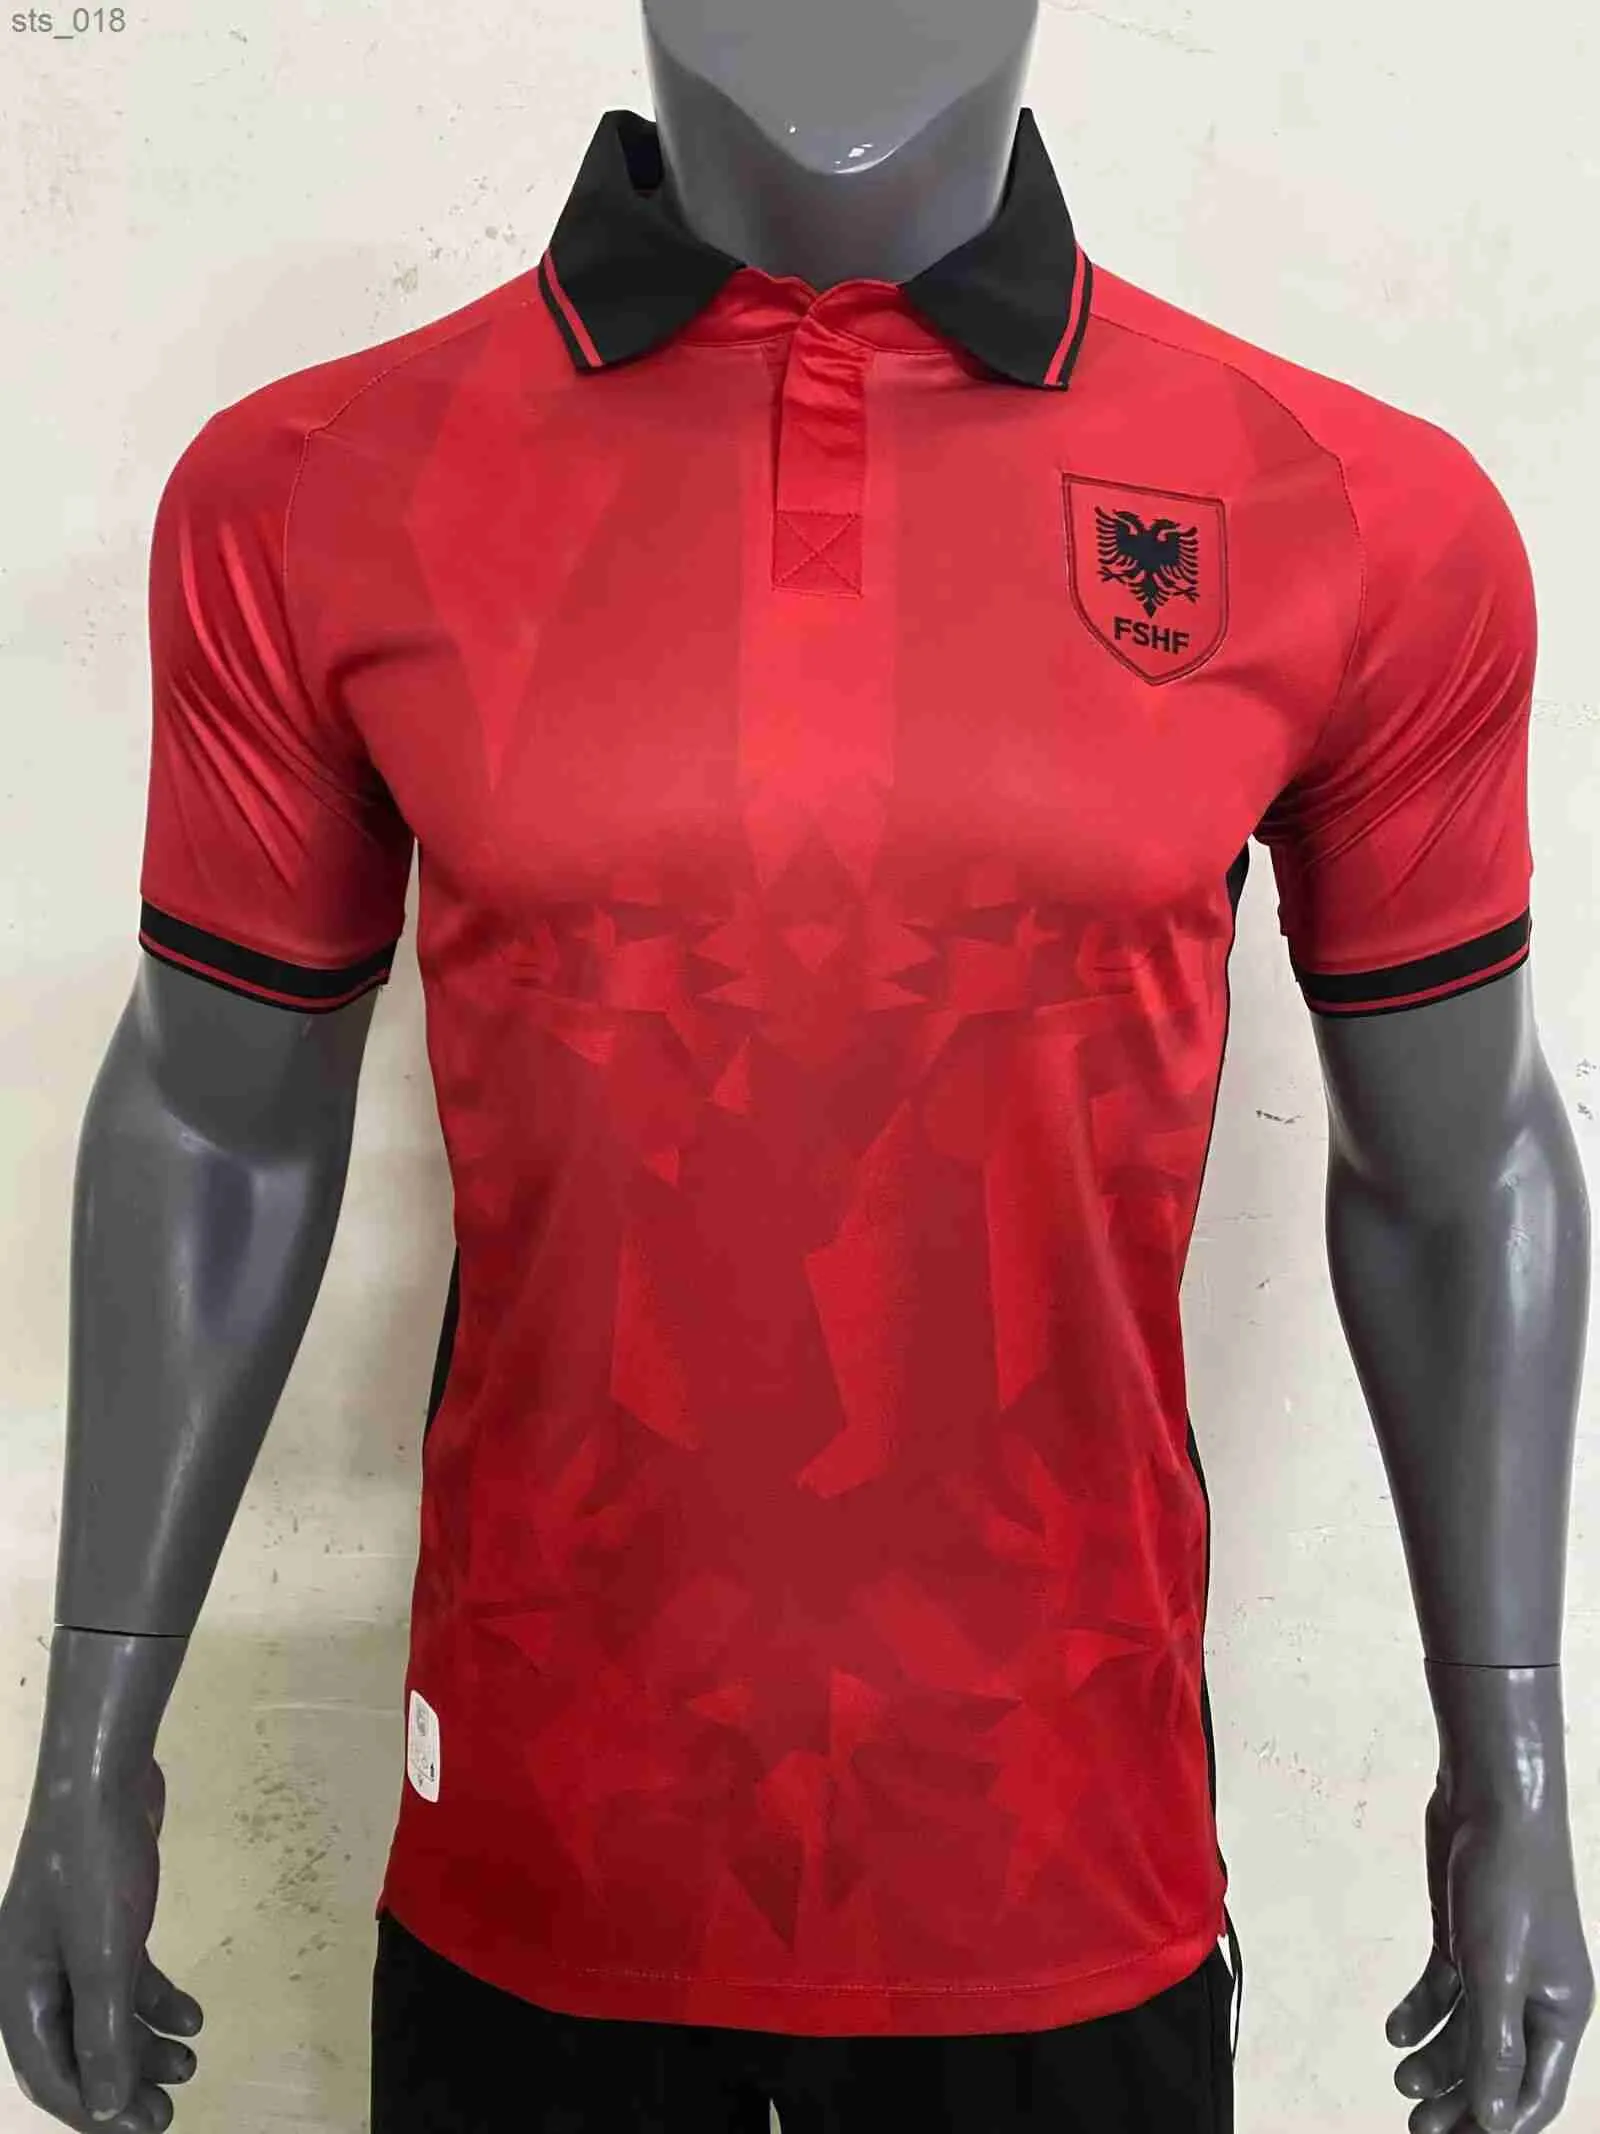 Soccer Jerseys 2024 Albania national team ASANI BAJRAMI ASLLANI UZUNI RAMADANI DJIMSITI LSMAJLI HYSAJ BARE football shirtH240306